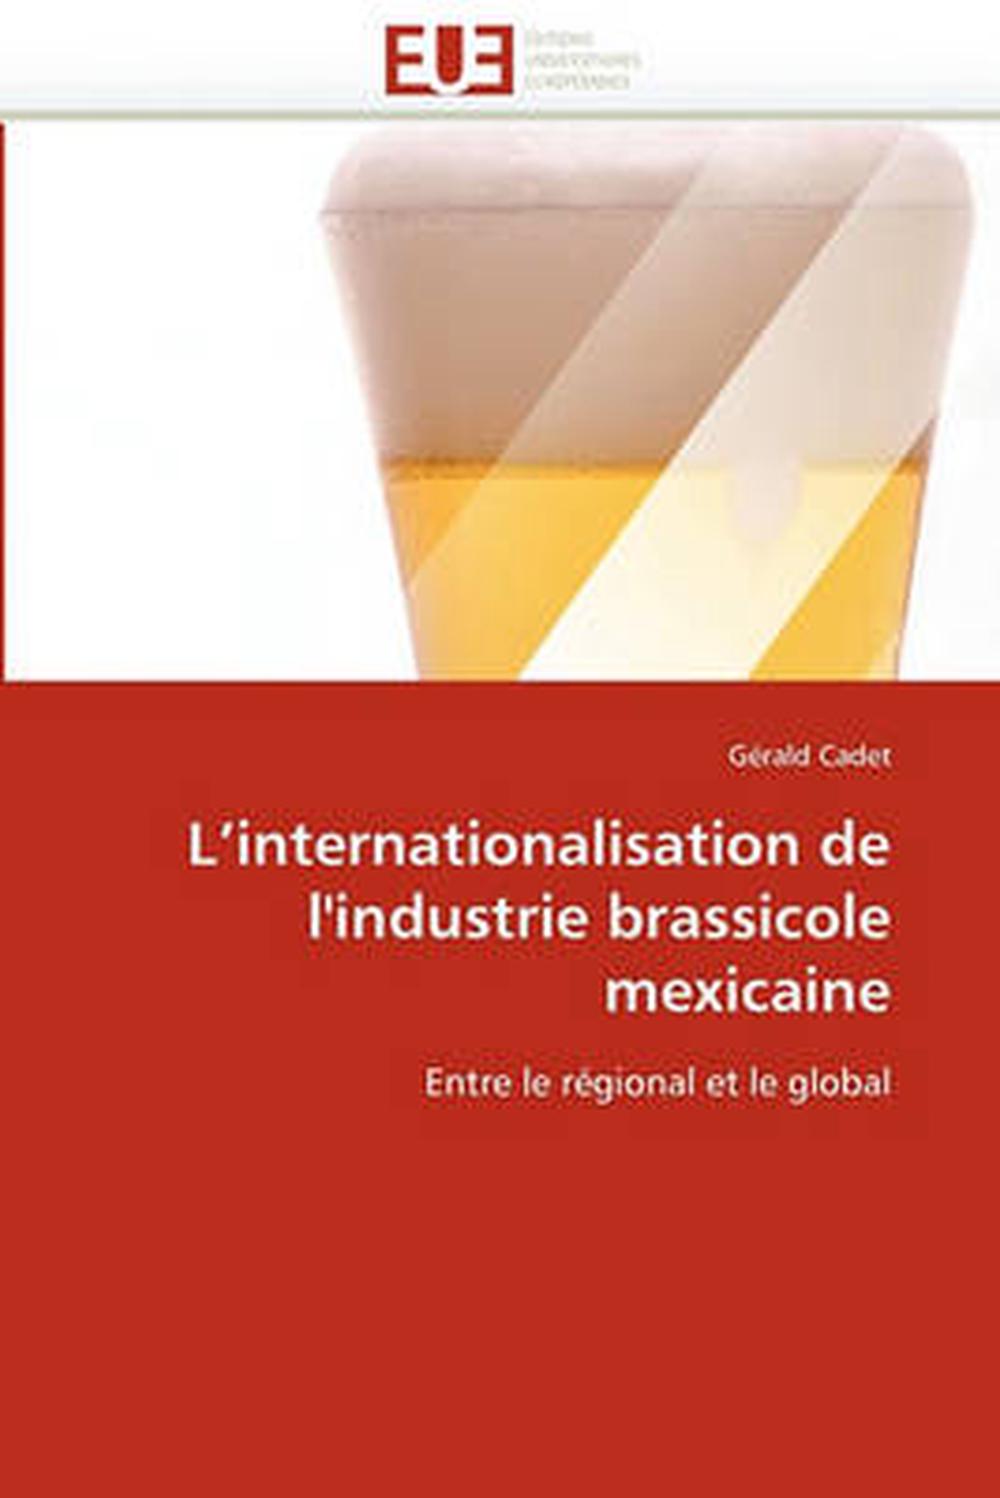 L'Internationalisation de L'Industrie Brassicole Mexicaine: Entre le r?(C)gional - Photo 1 sur 1